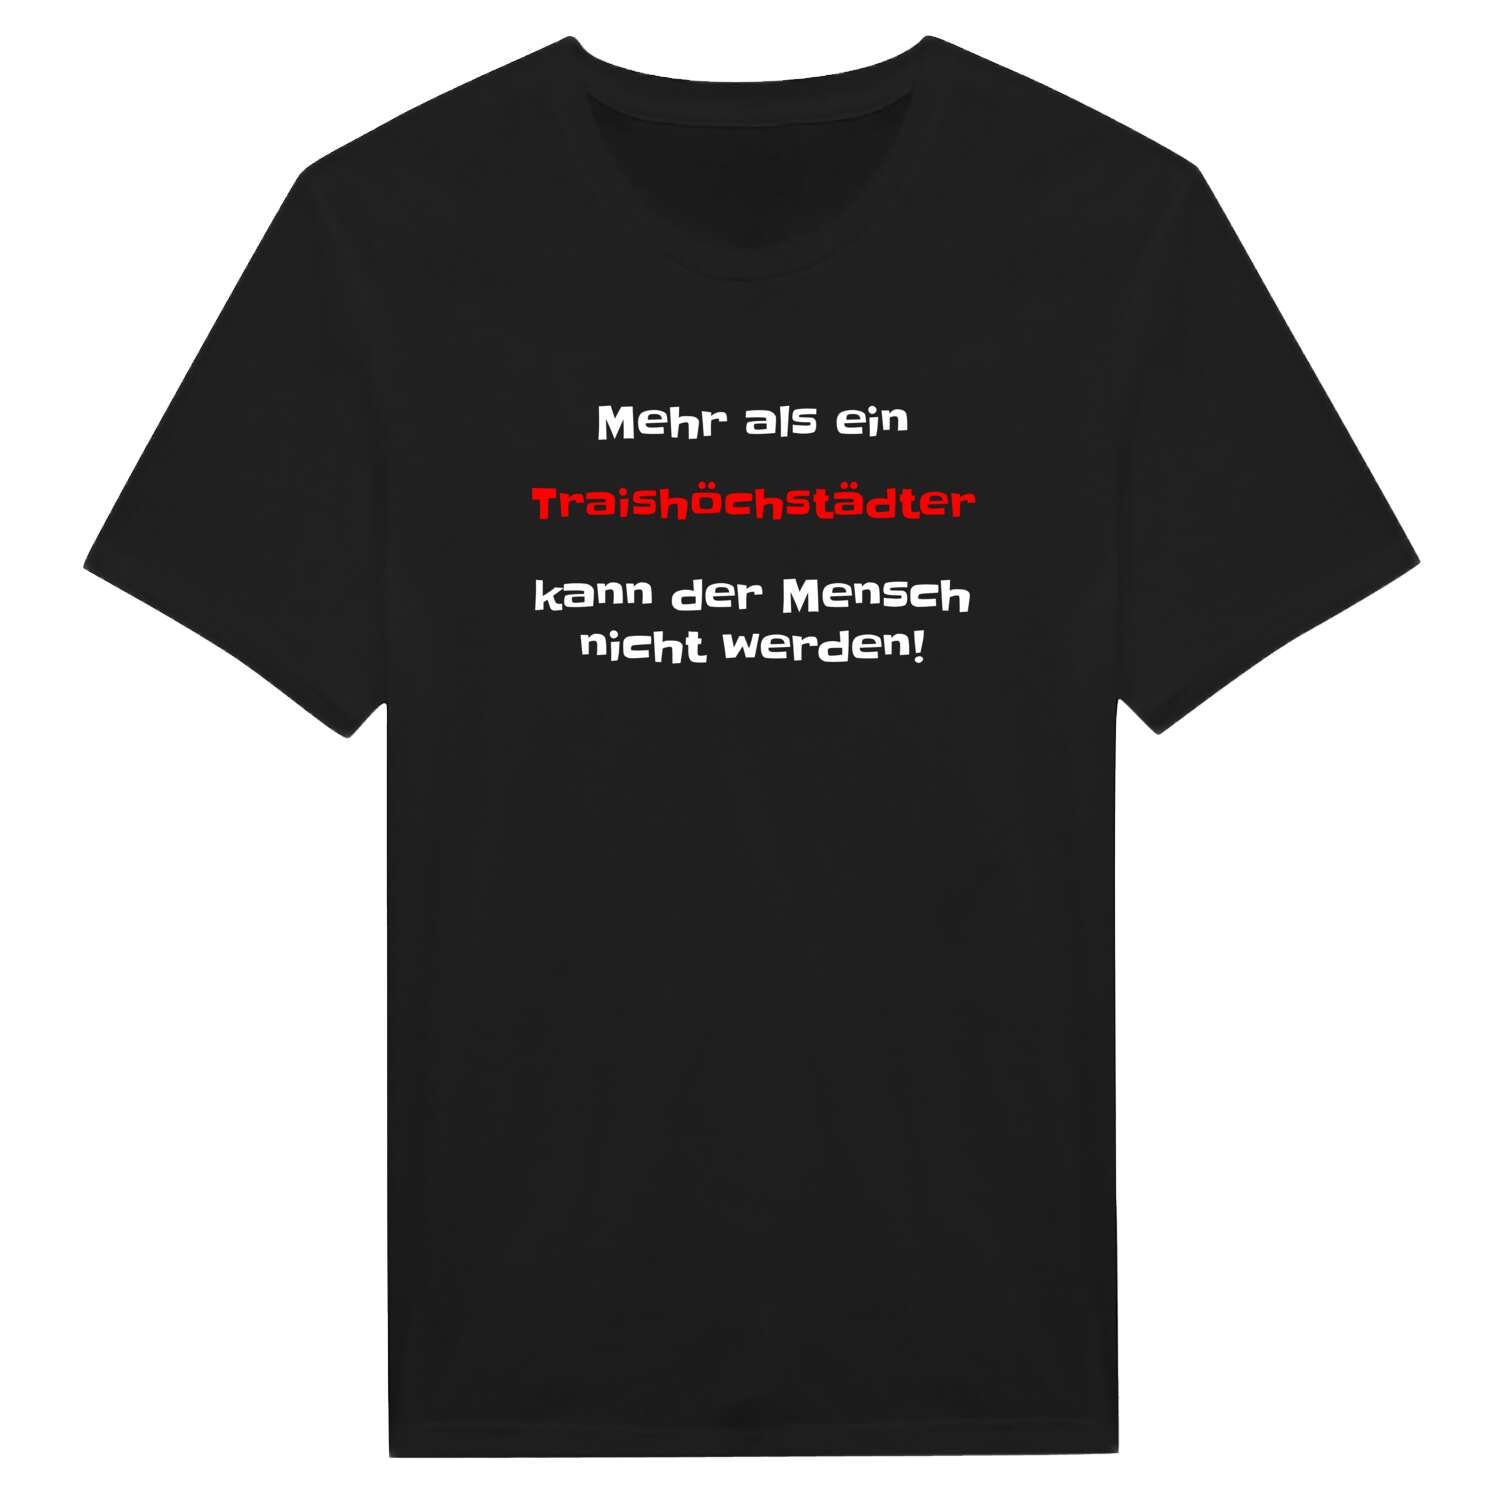 Traishöchstädt T-Shirt »Mehr als ein«